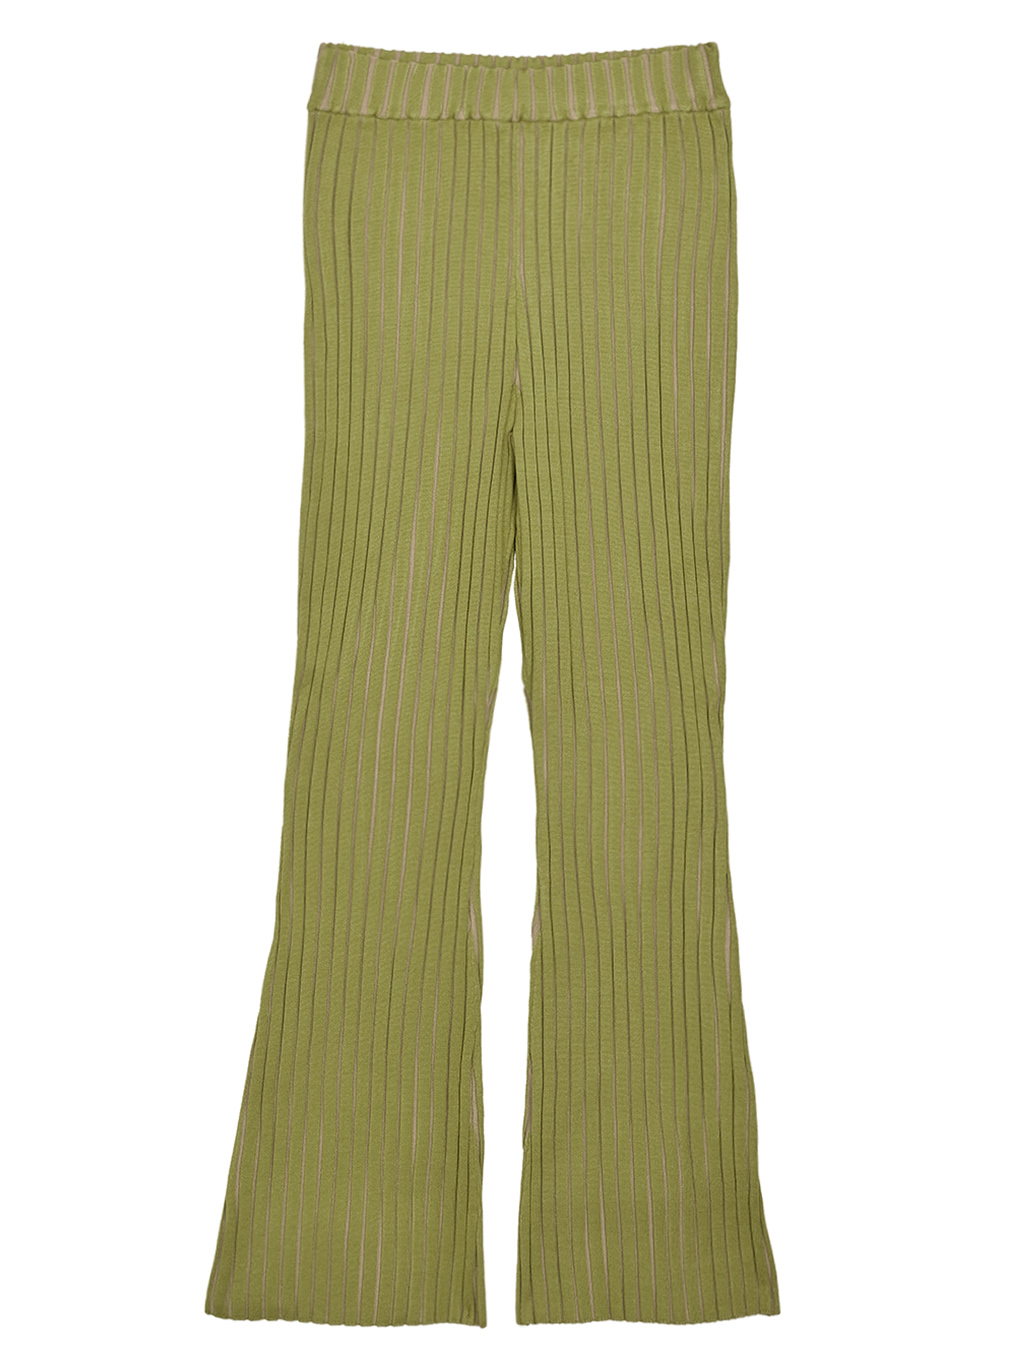 爆買い得価 Ameri VINTAGE - Color scheme rib knit pantsの 得価即納